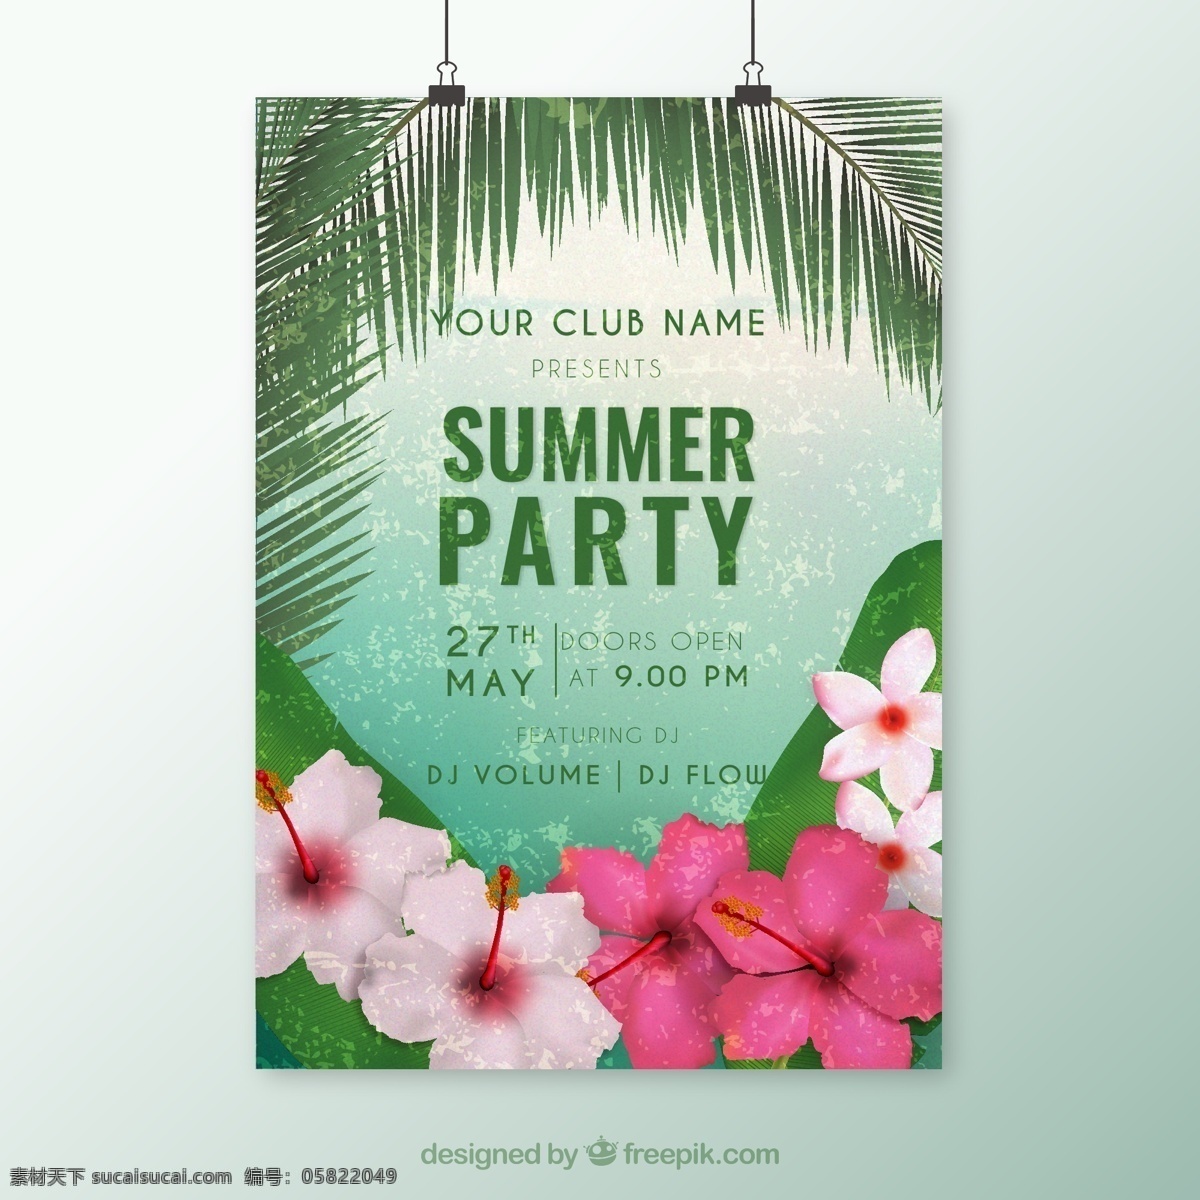 夏季 热带 花卉 派对 海报 俱乐部 植物 热带植物 扶桑花 棕榈树叶